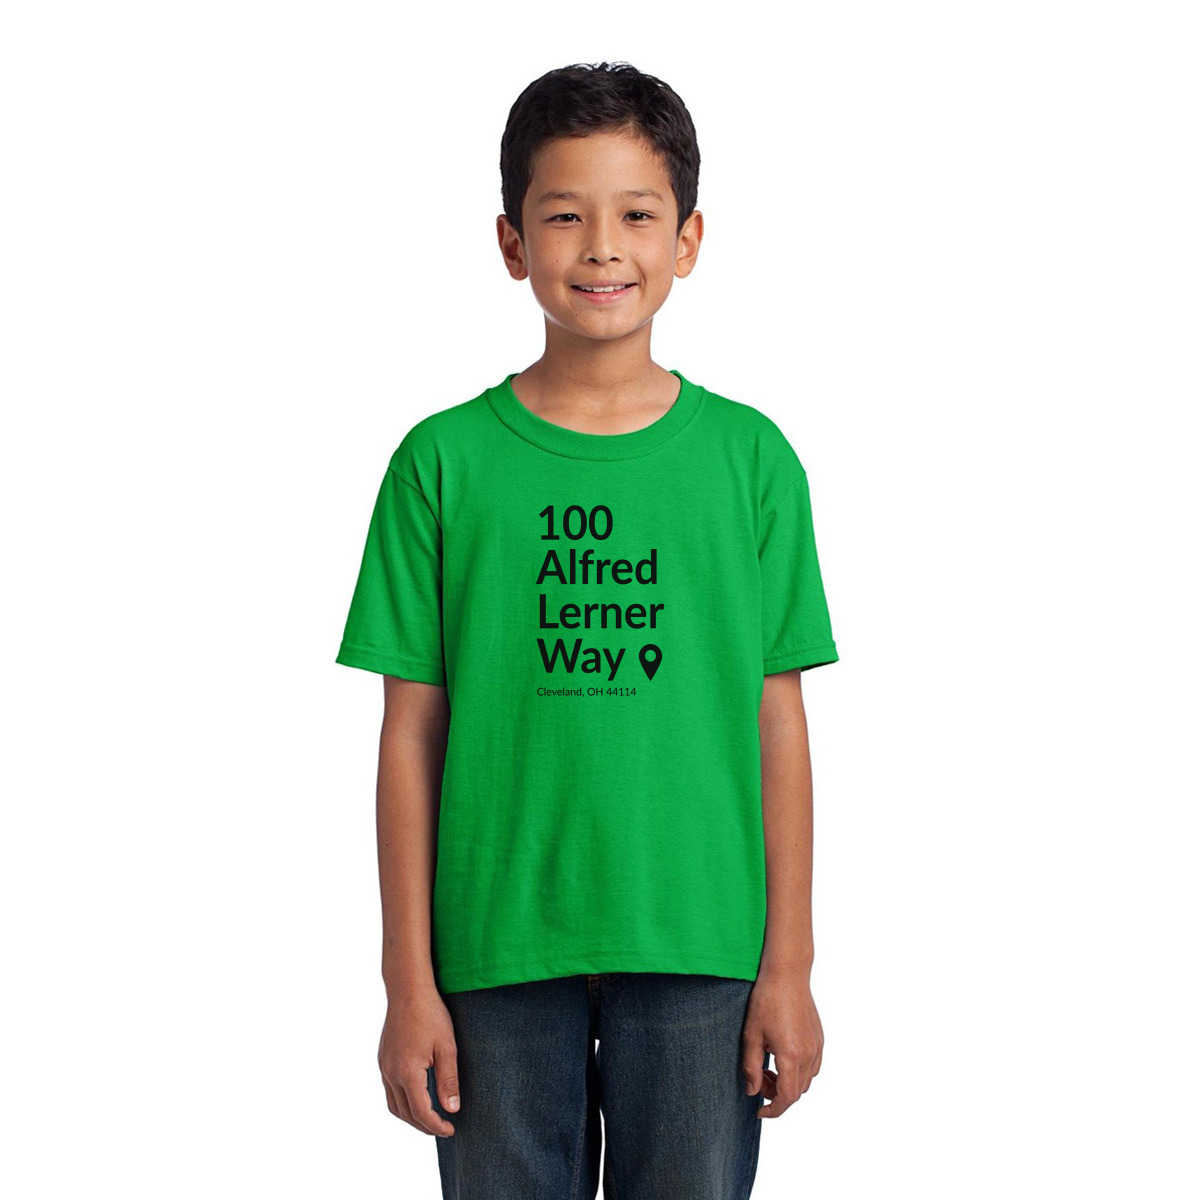 Cleveland Football Stadium Kids T-shirt | Green